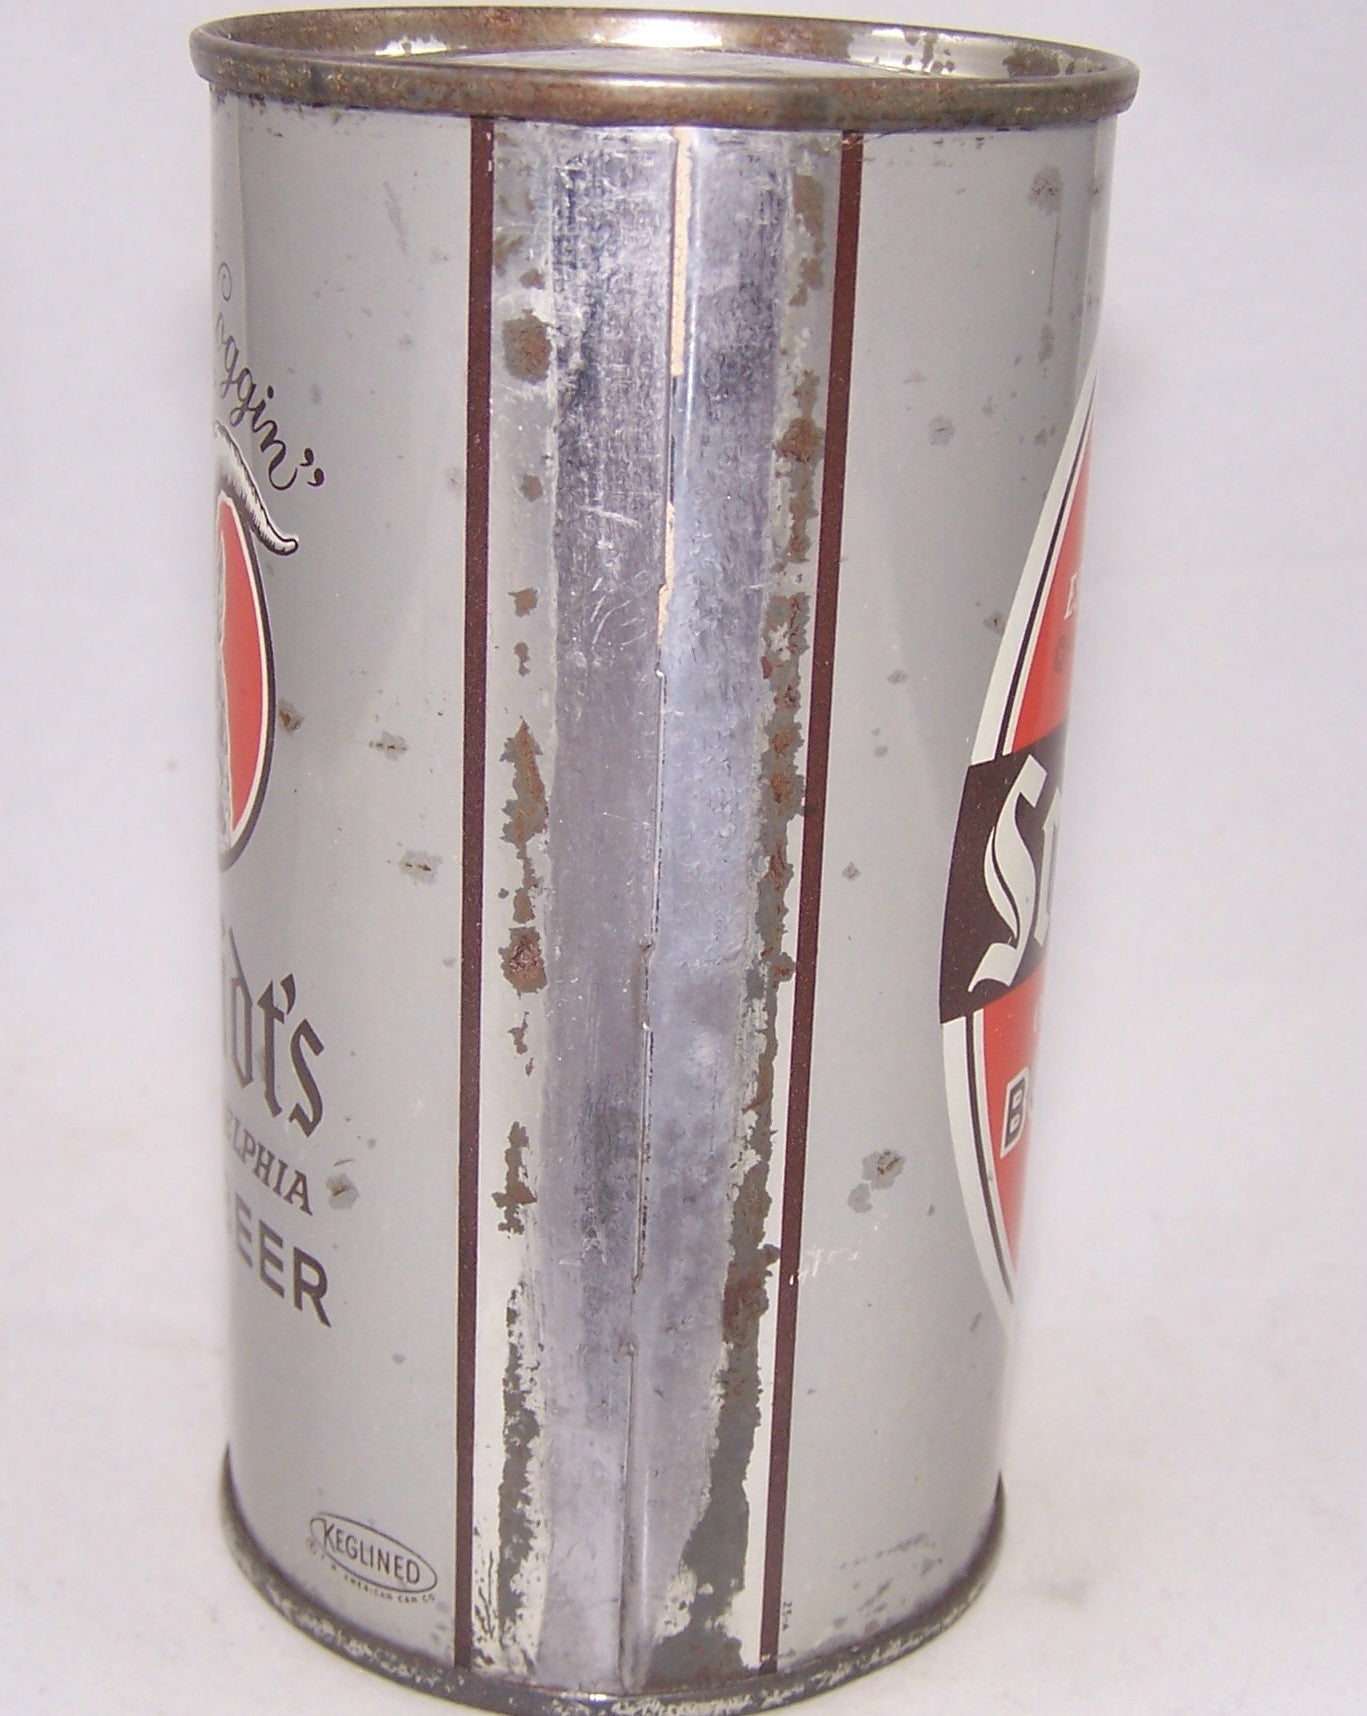 Schmidt's Bock Beer, USBC 131-33, Grade 1- Sold on 06/03/17